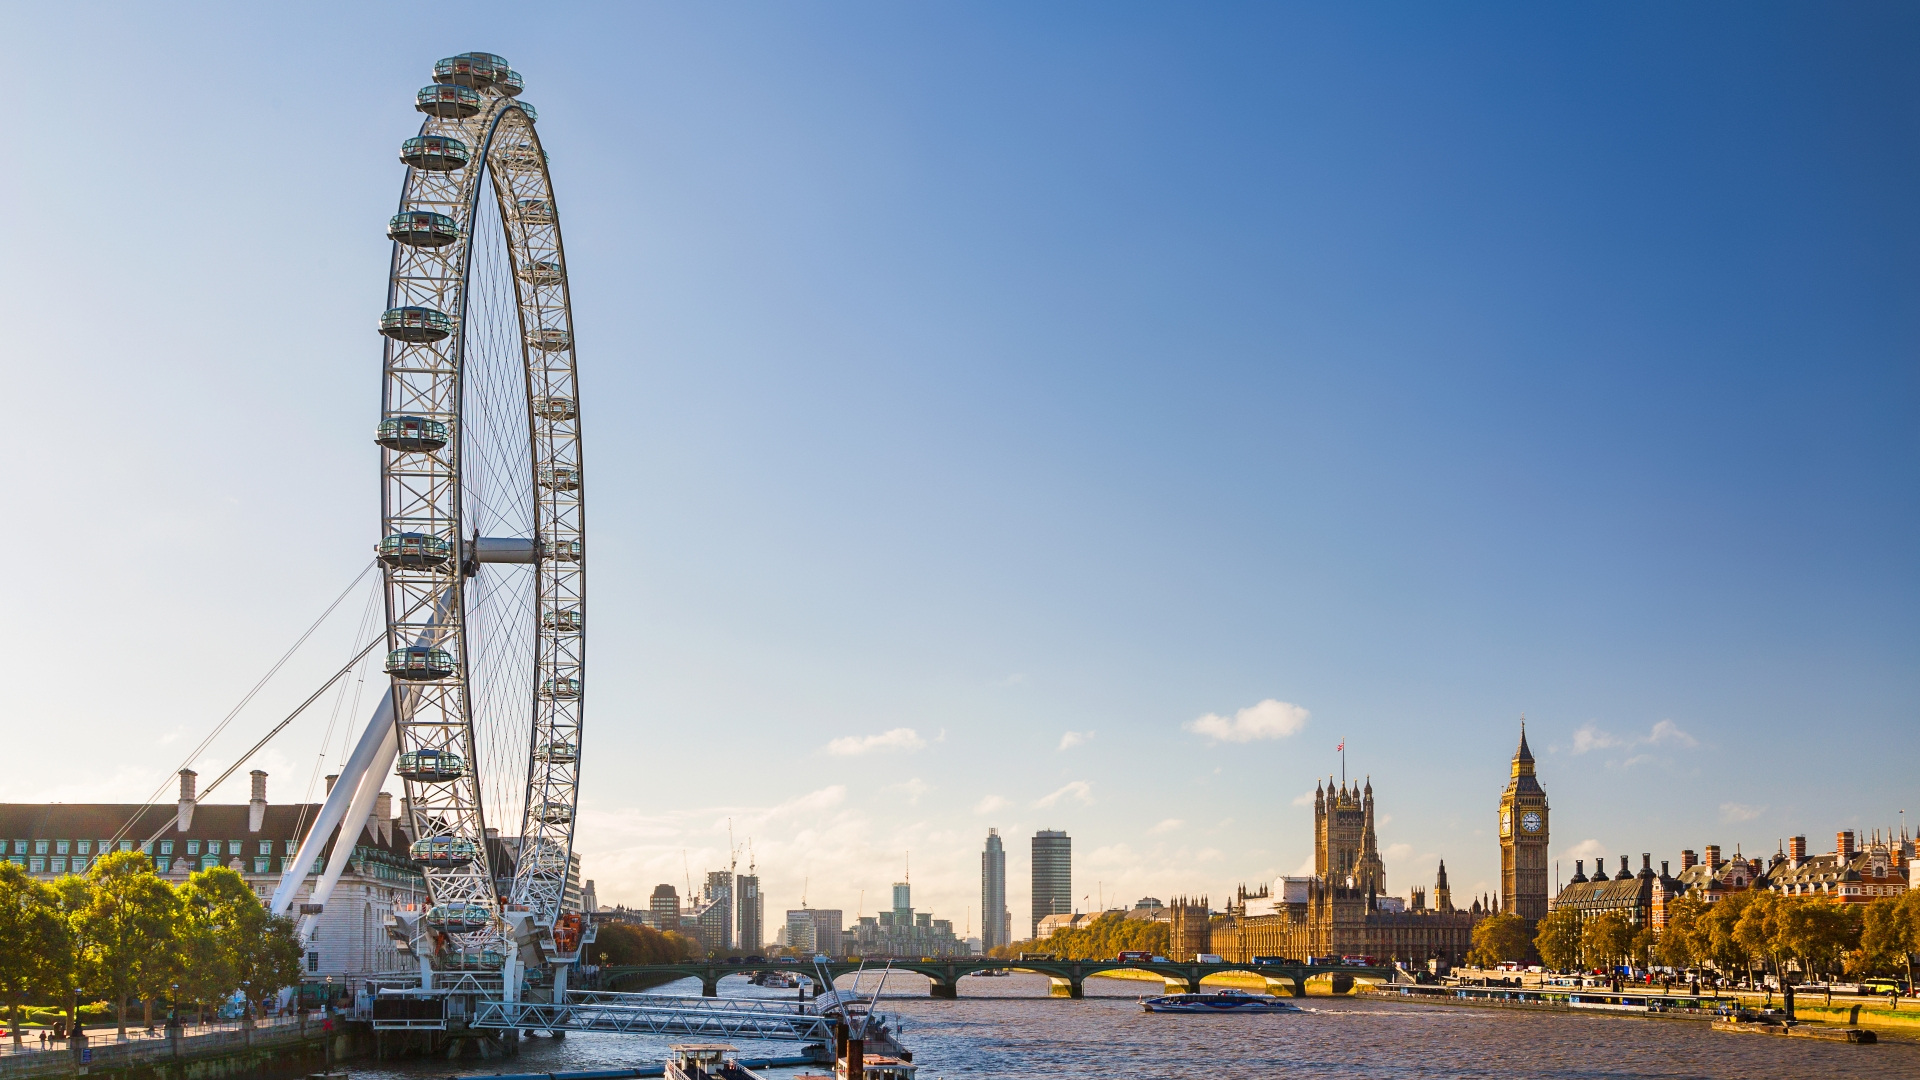 Le London Eye et la Tamise avec les Chambres du Parlement et Big Ben visibles au loin.